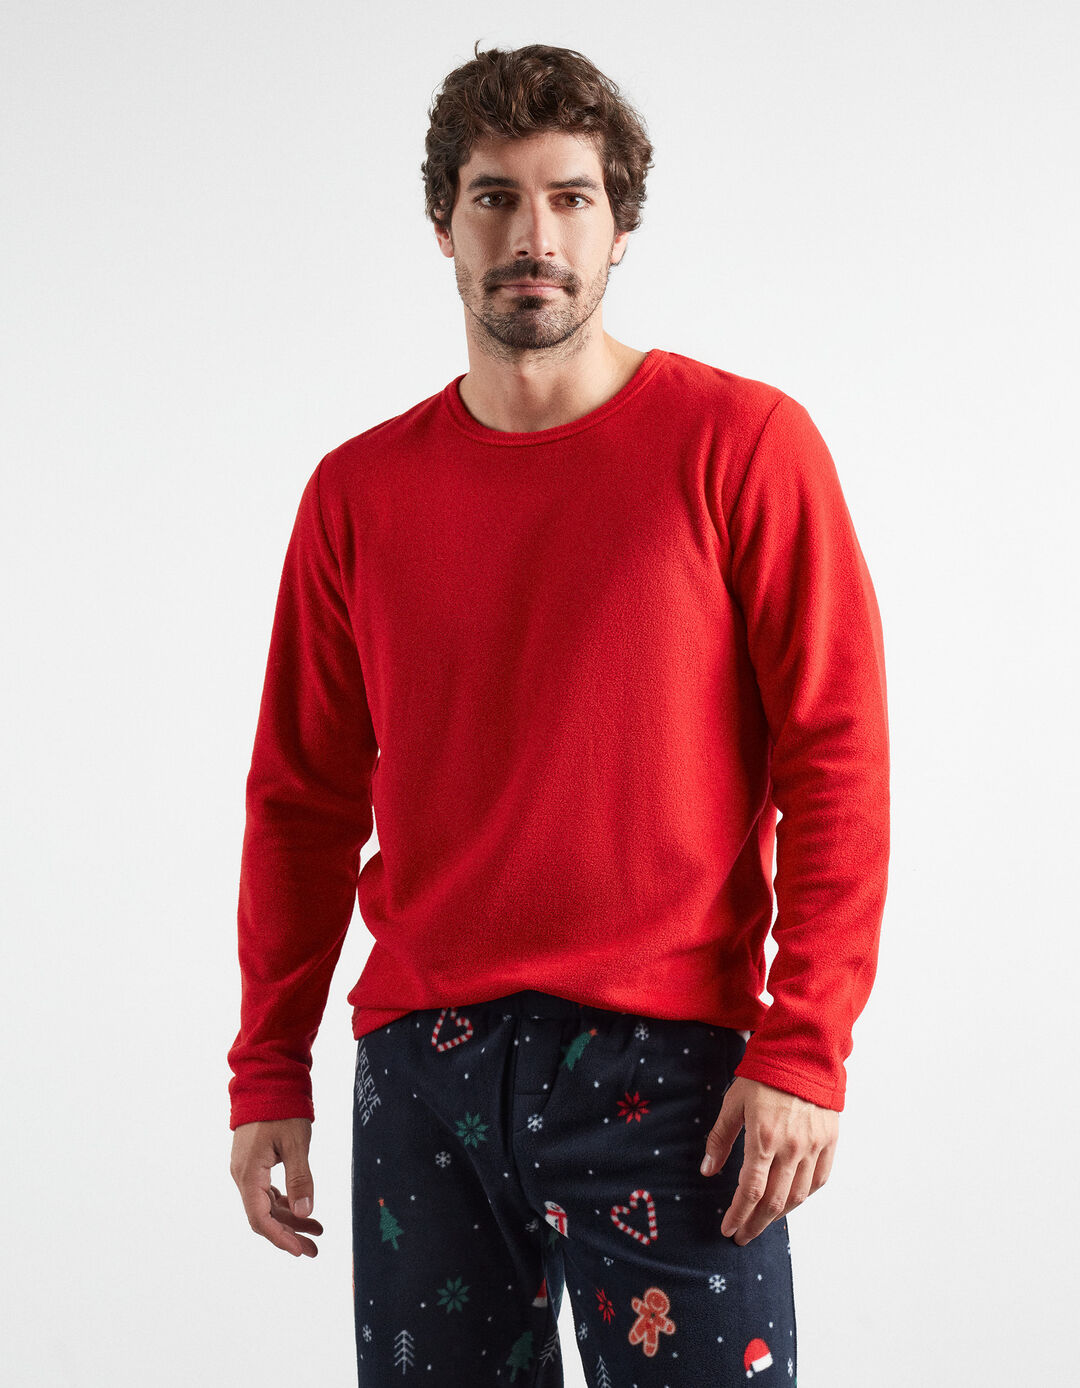 'Christmas' pajamas, Man, Multiple colors